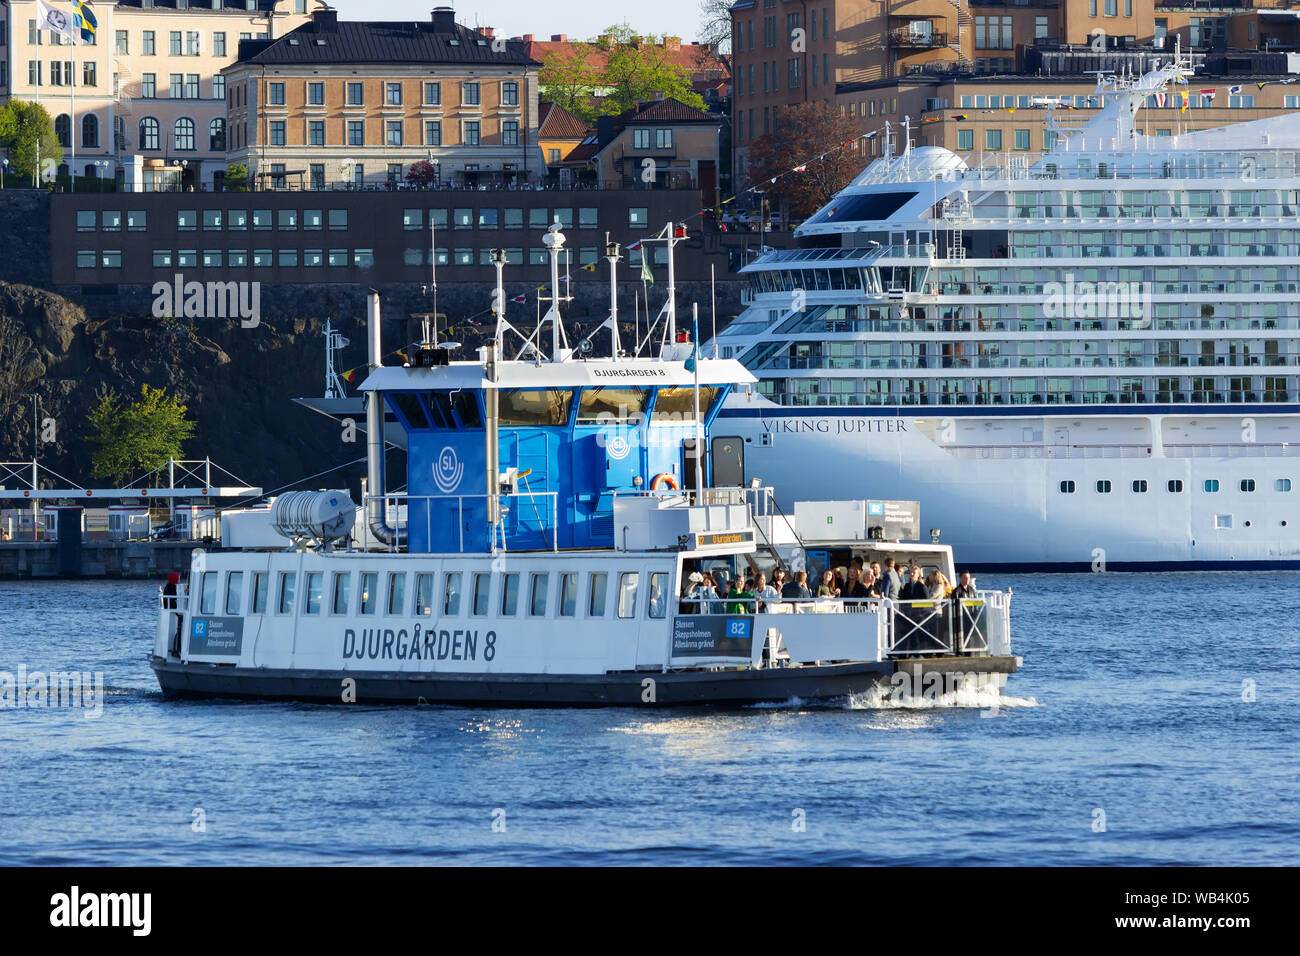 SL (compagnie de transport) le ferry de banlieue « Djurgarden 8 » transporte les passagers vers les différentes destinations d'arrêt autour du centre de stockholm, Djurgarden etc Banque D'Images